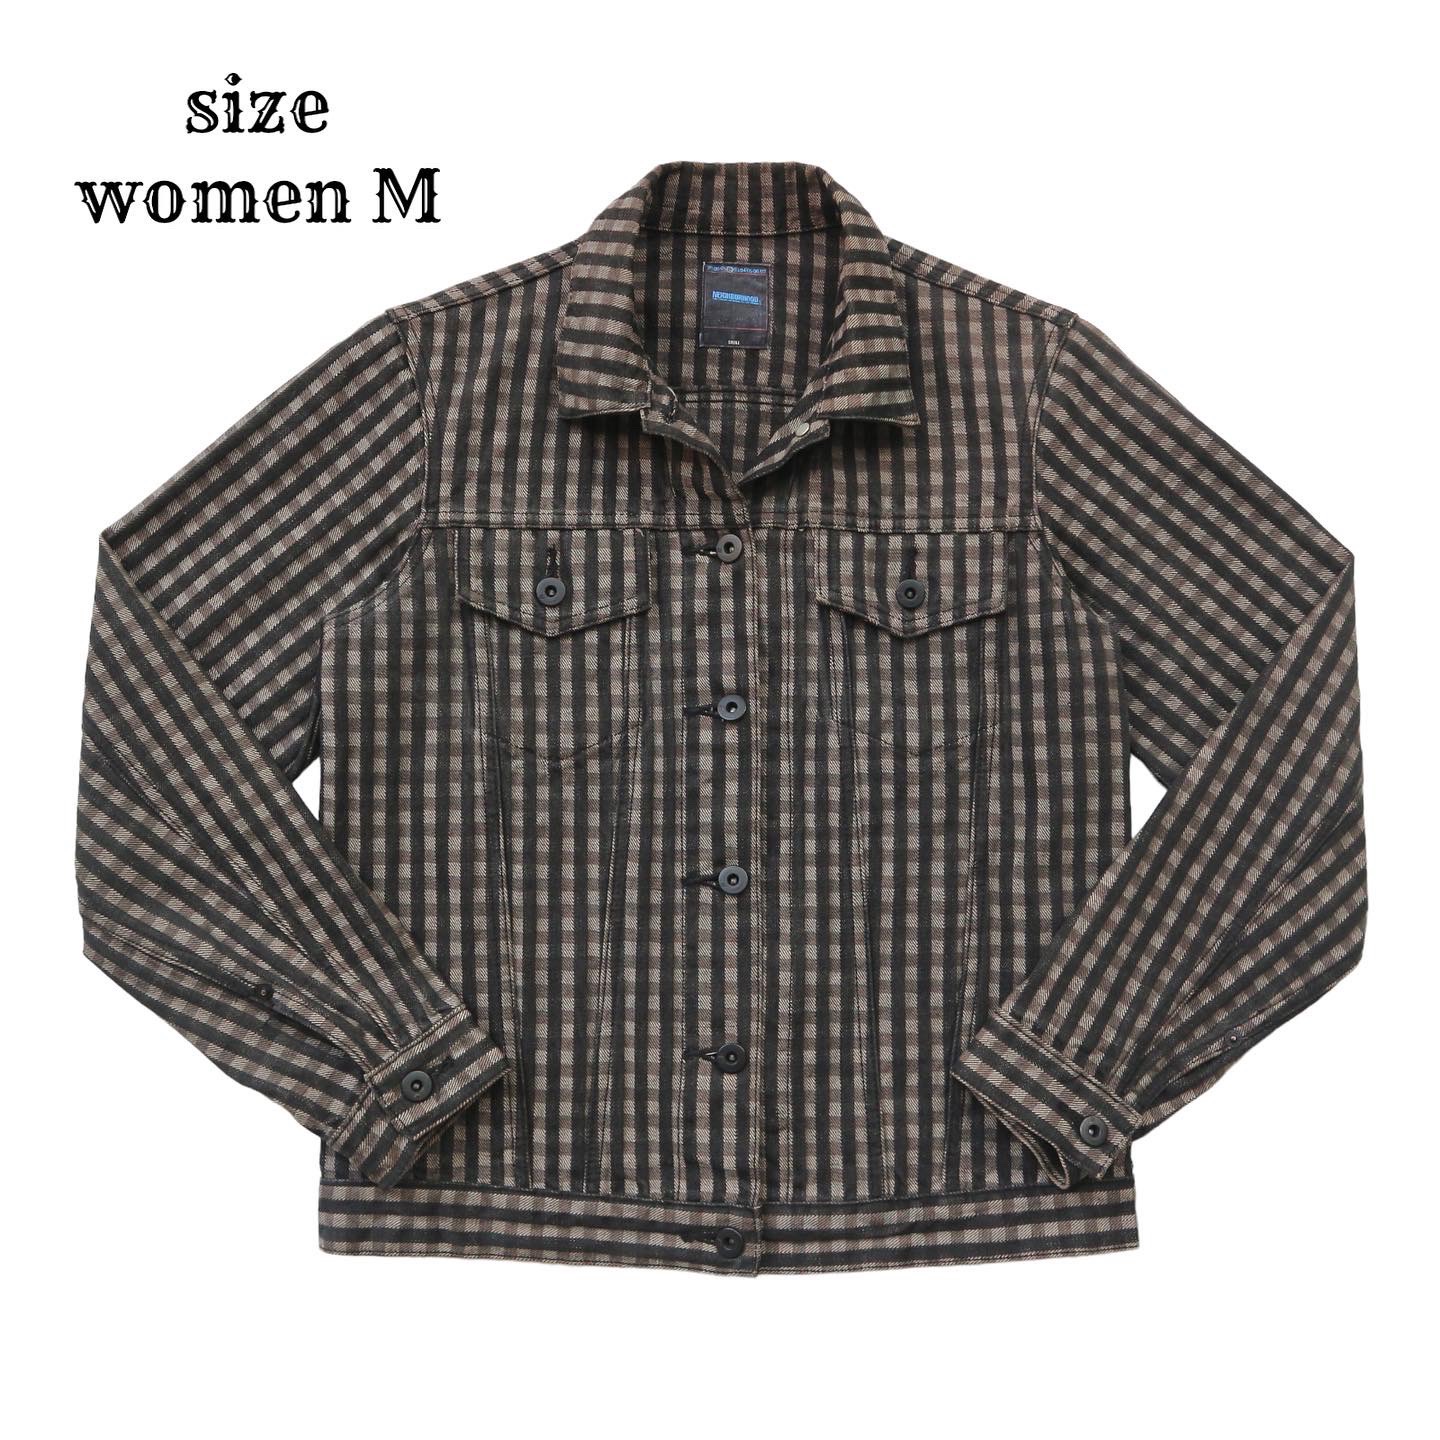 Neighborhood Jacket Size Women M